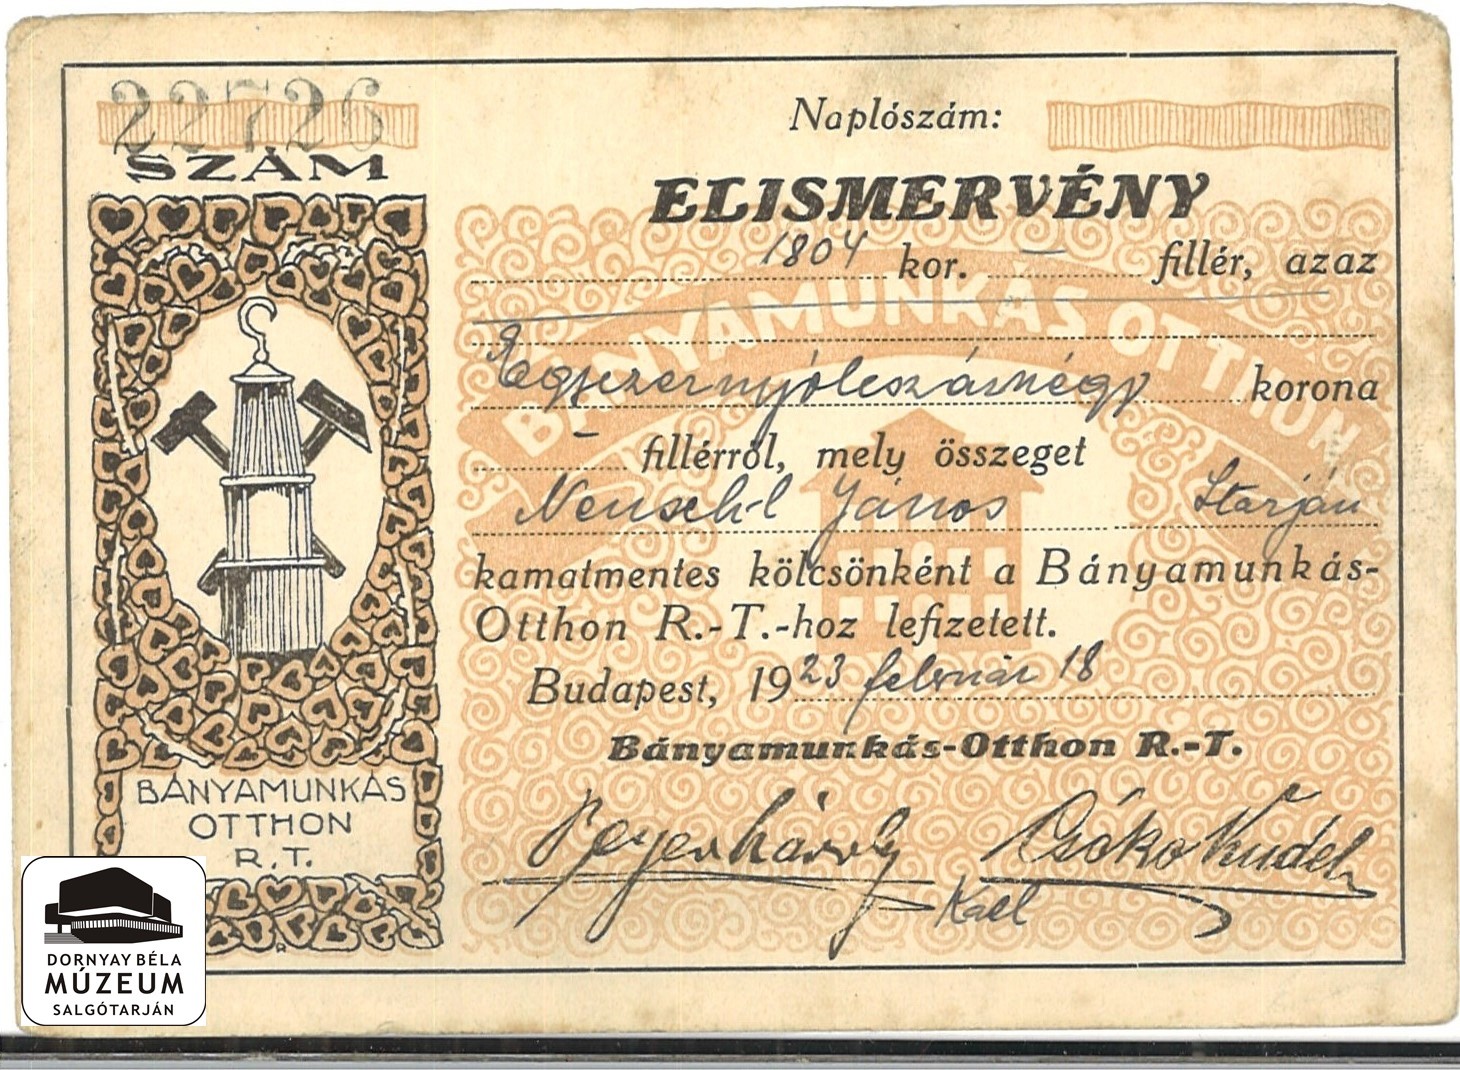 Neuschel János hozzájárulása a Bányamunkás Otthon Rt.-hoz (Dornyay Béla Múzeum, Salgótarján CC BY-NC-SA)